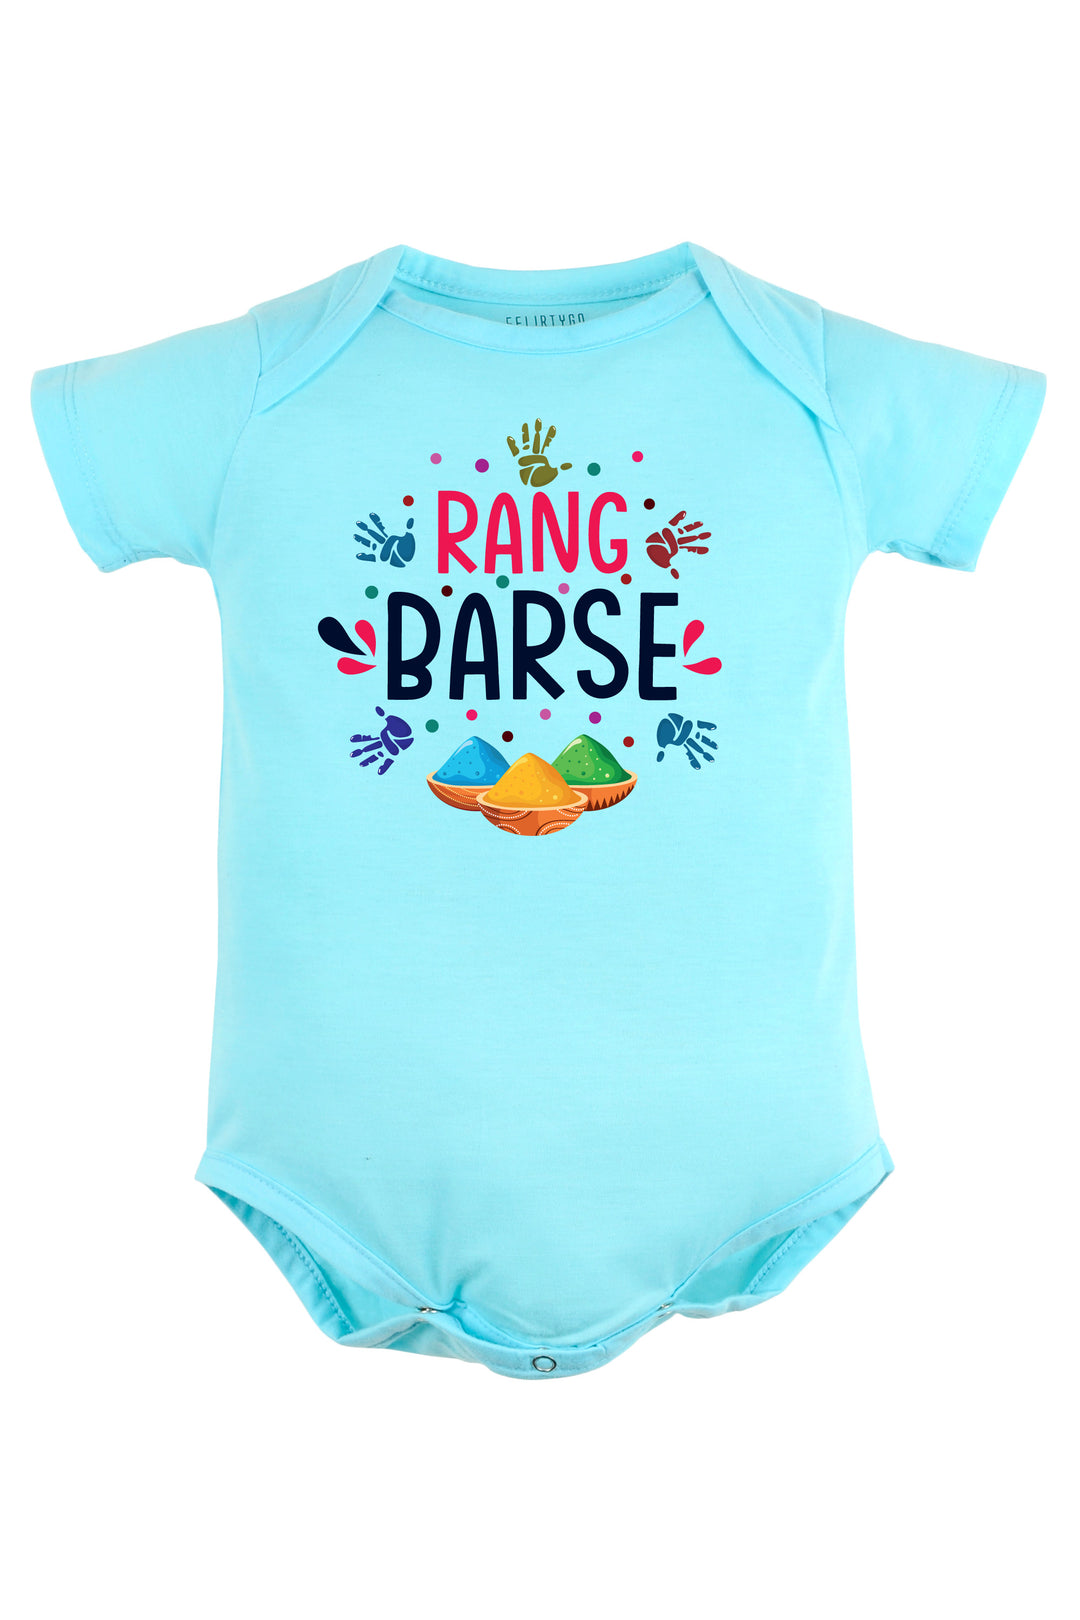 Rang Barse Baby Romper | Onesies